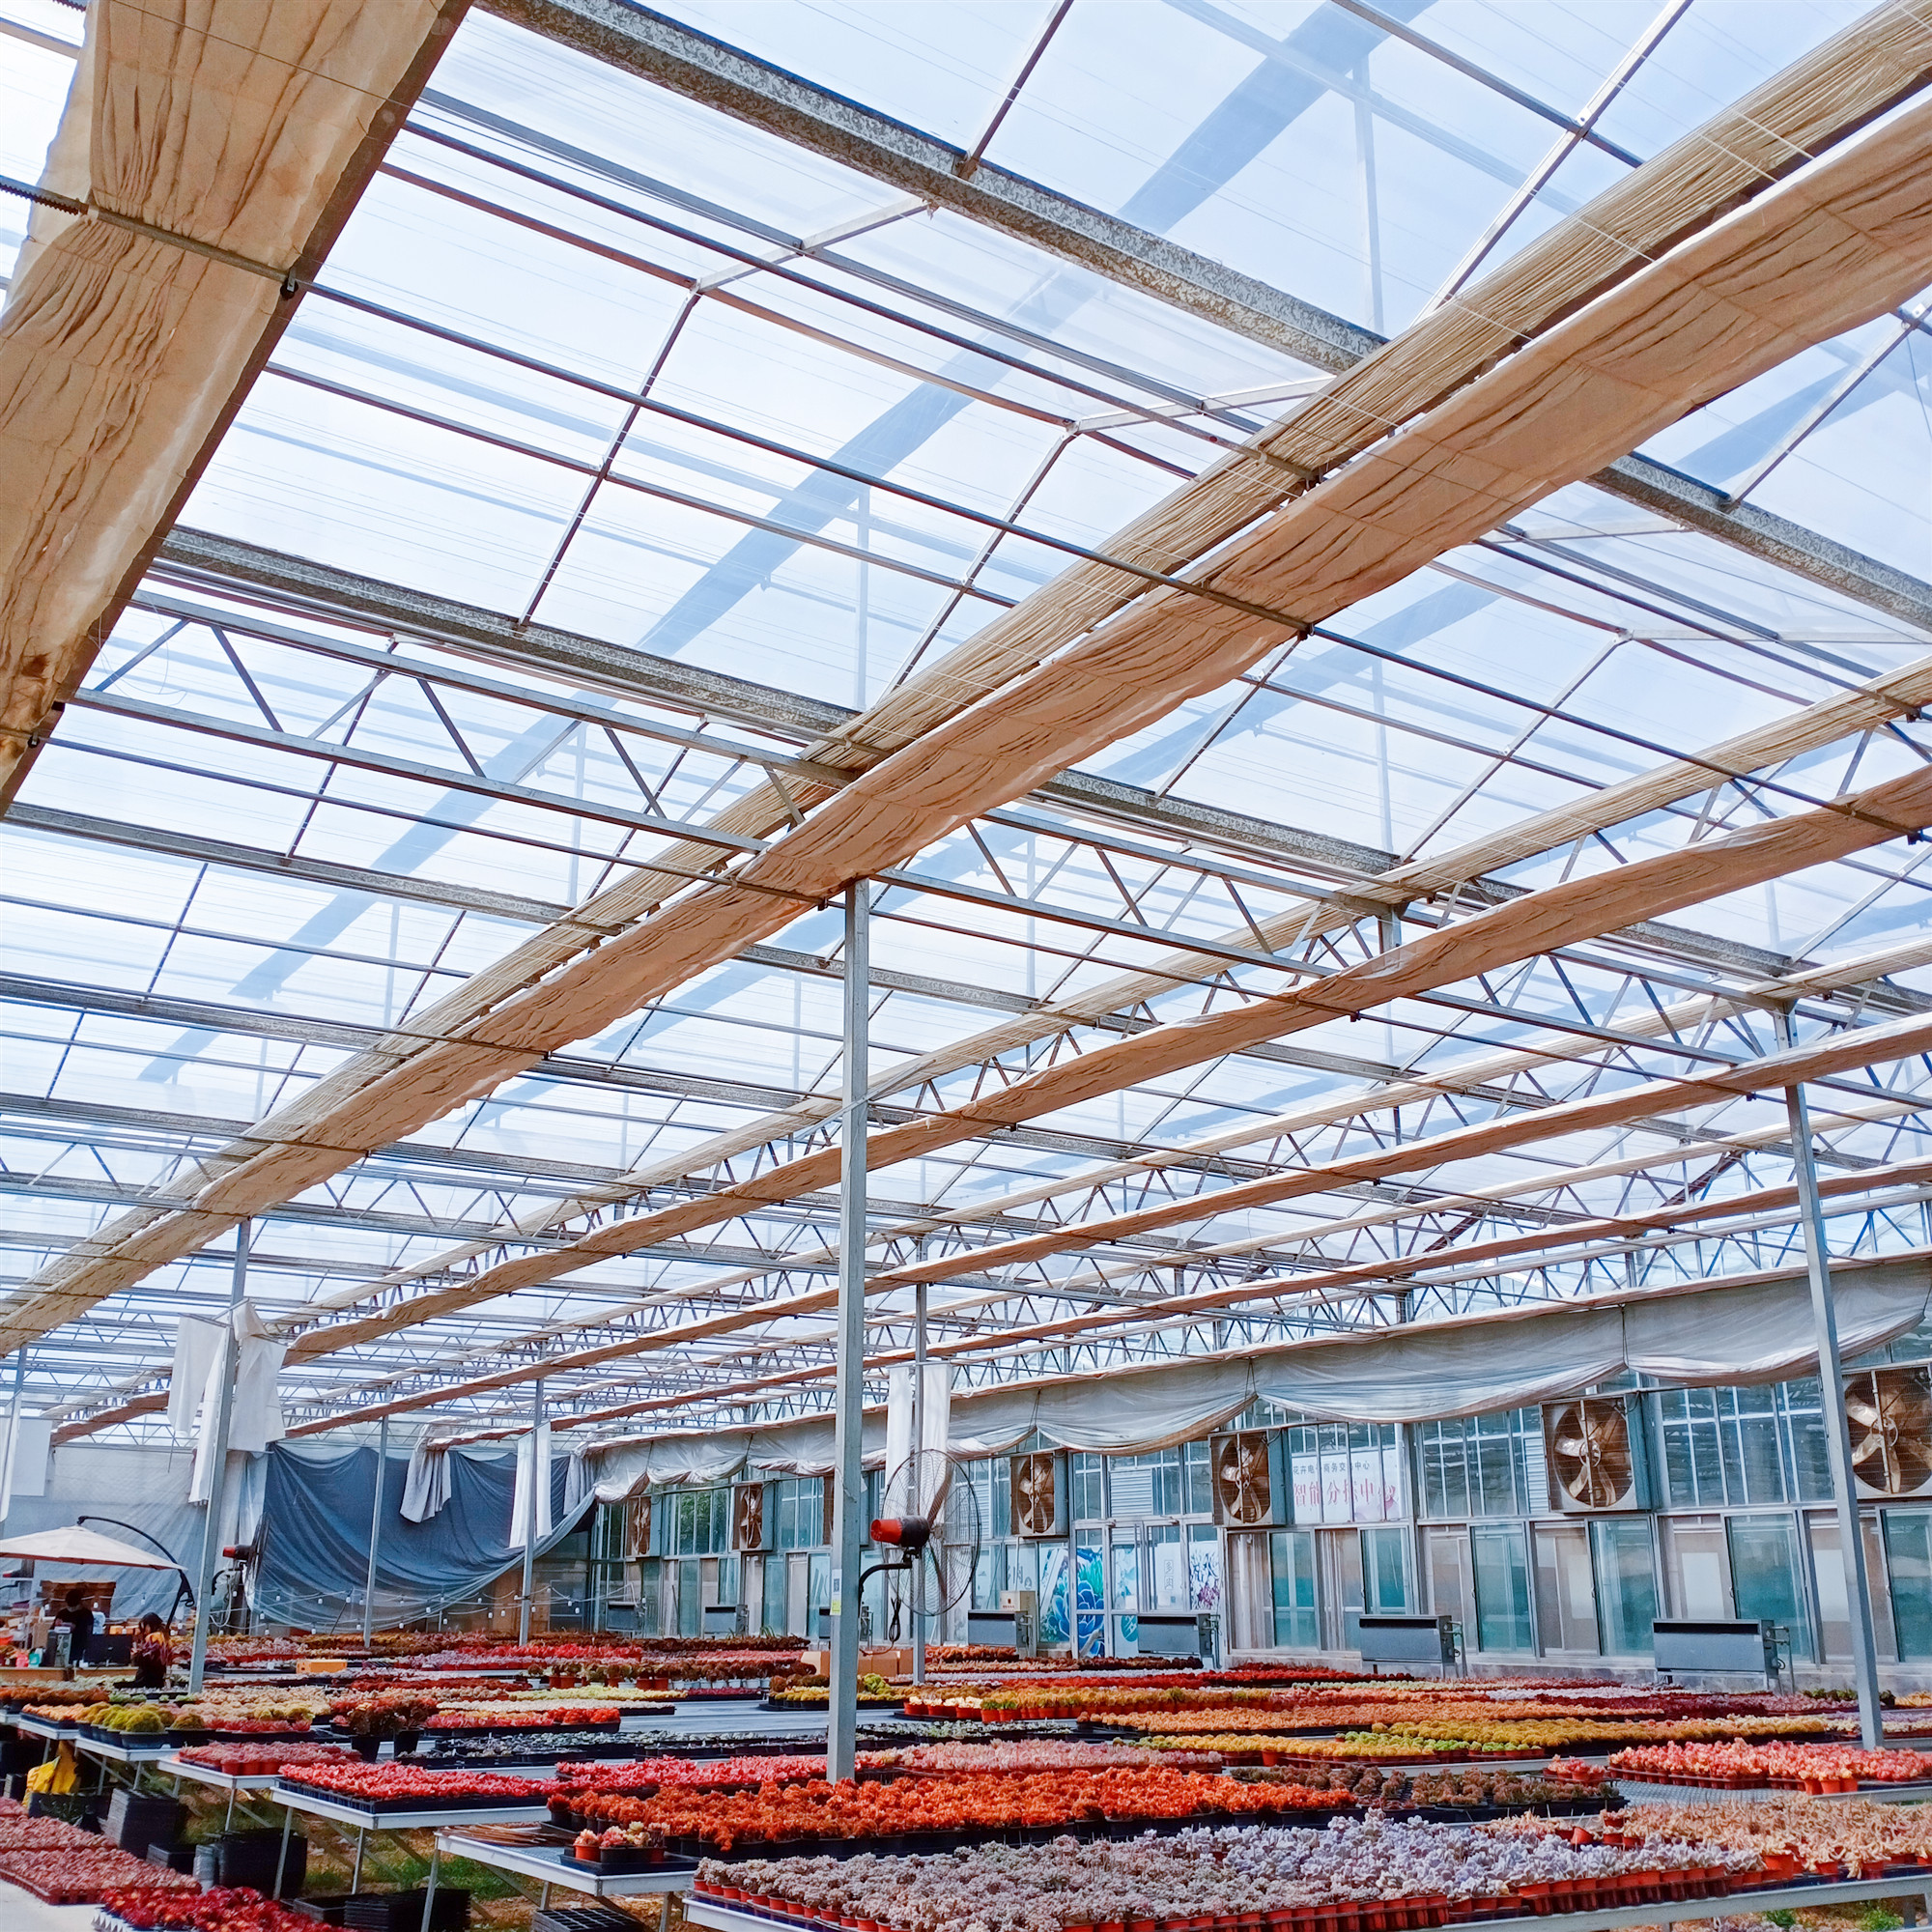 江苏无锡单双层玻璃温室大棚加工 养殖温室大棚按需定制 新型智能玻璃温室通风系统设计4